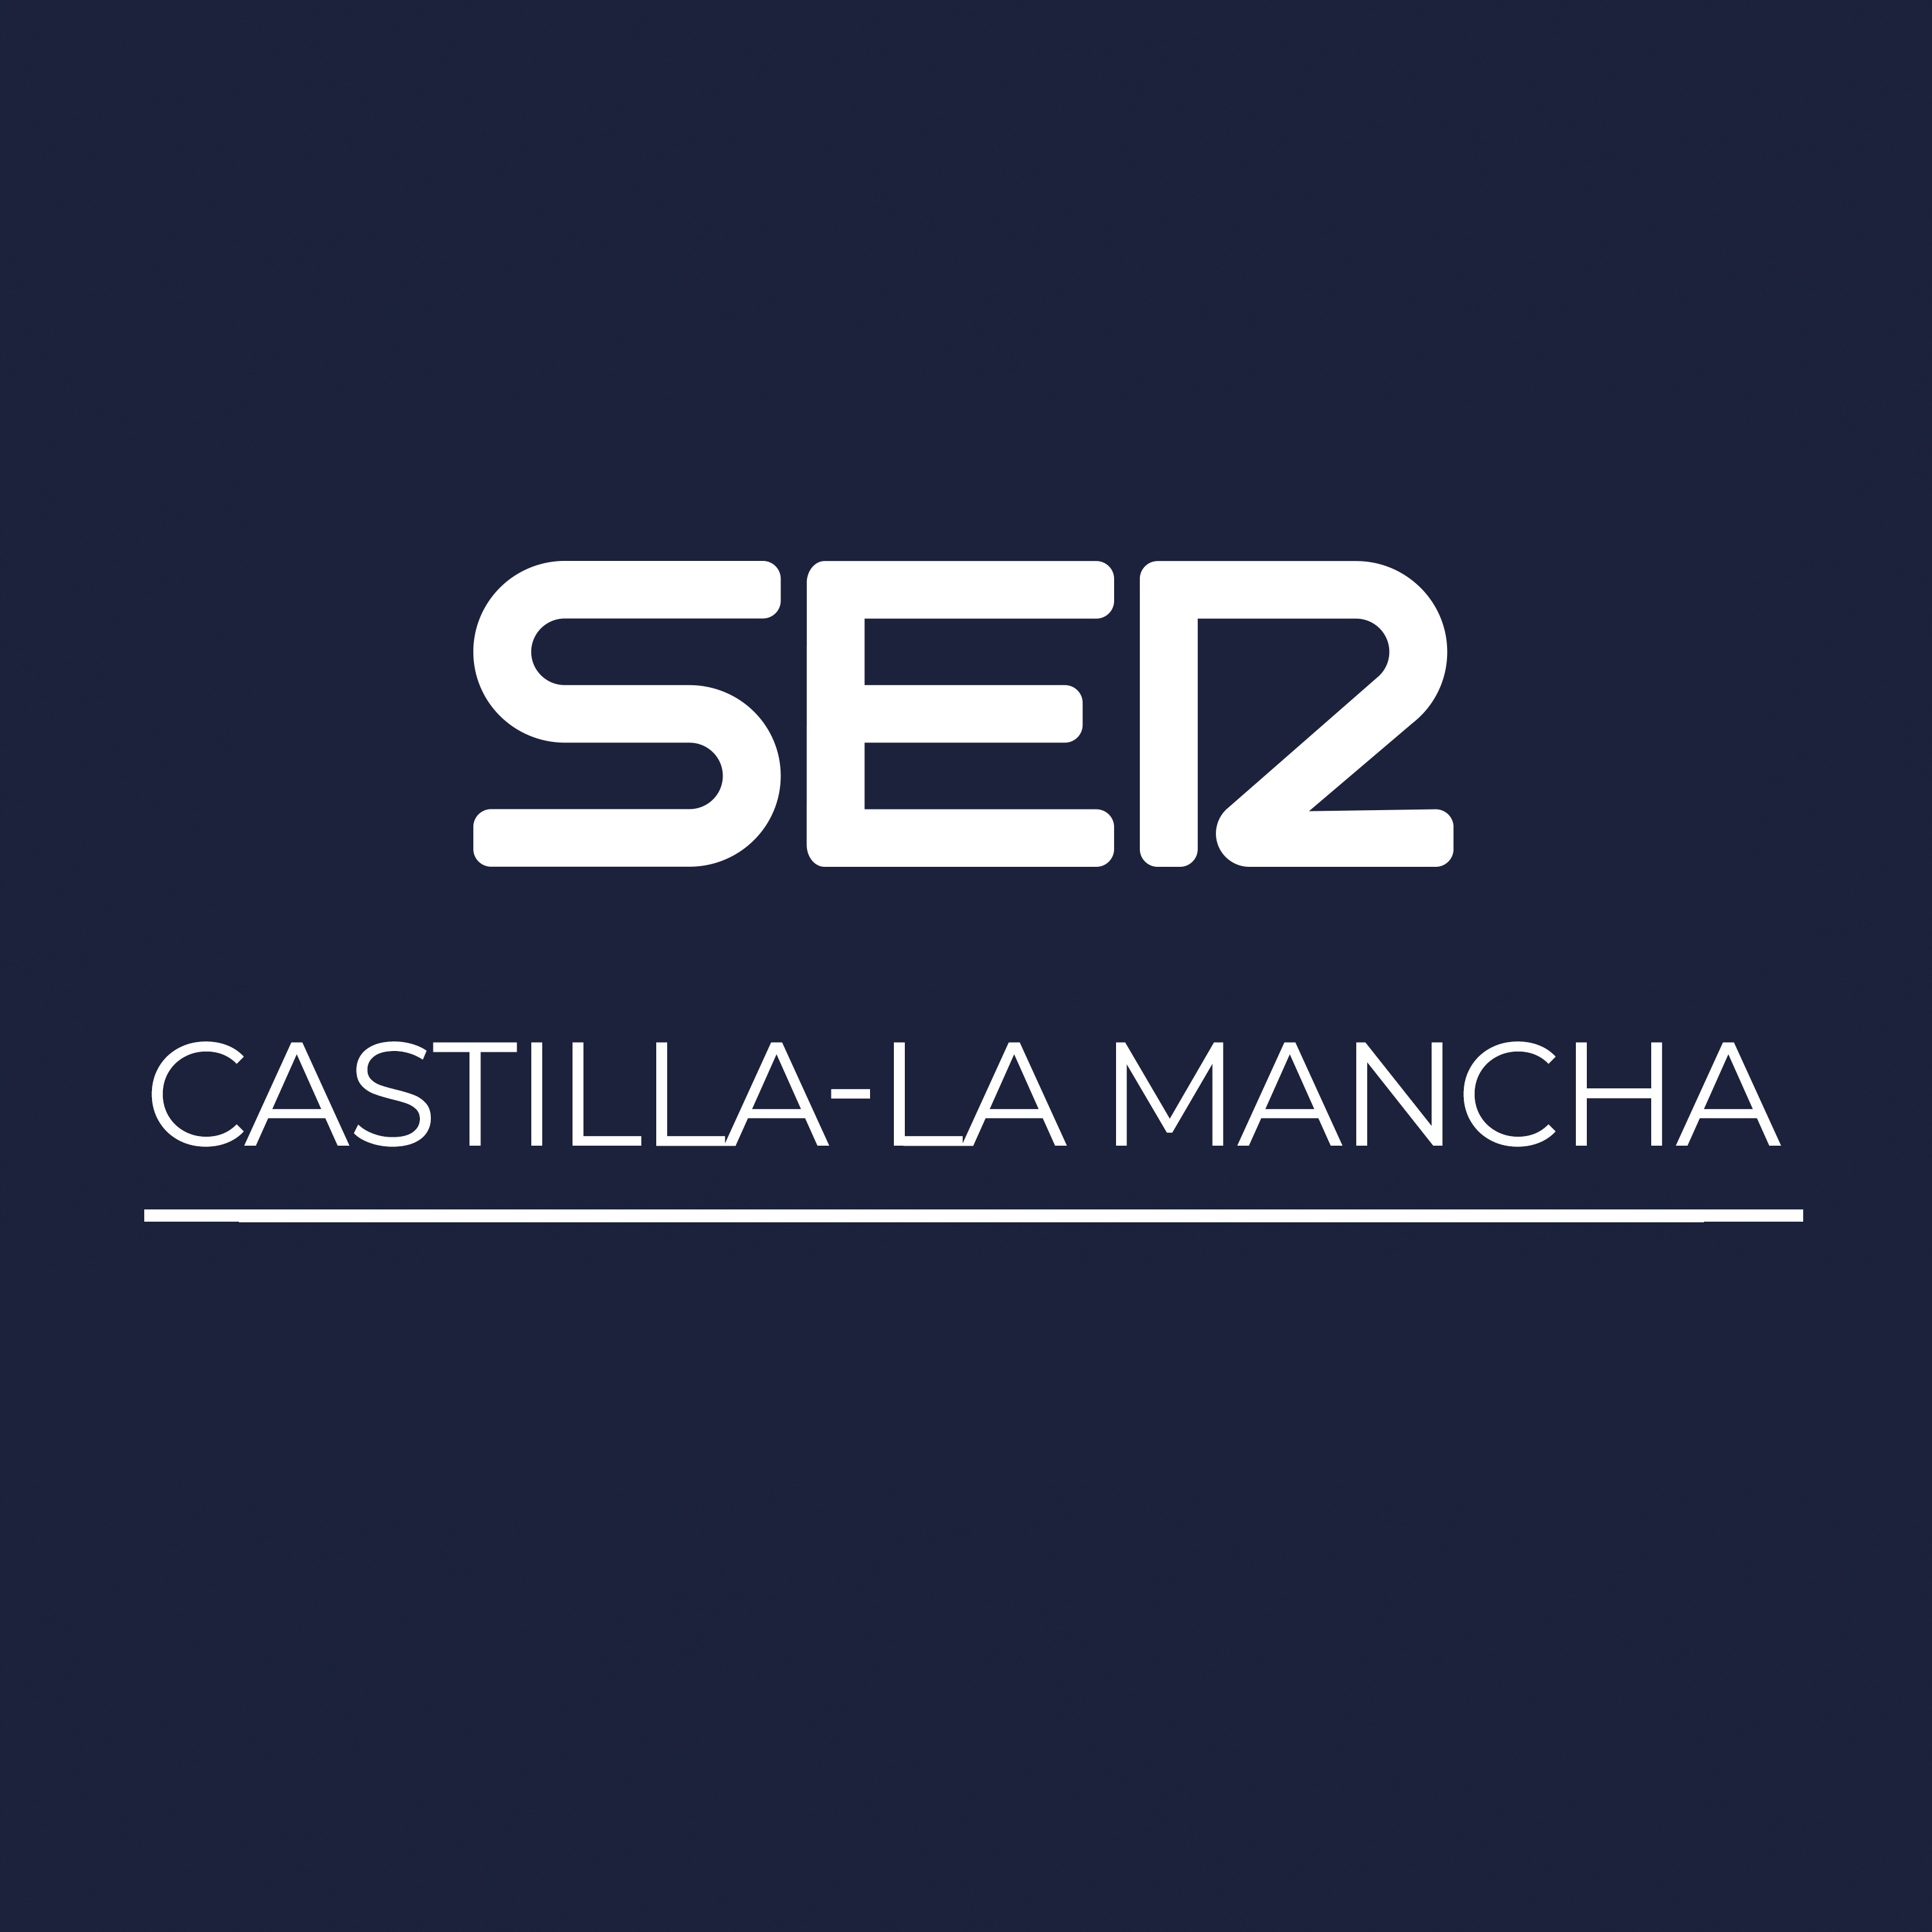 Las noticias de Castilla-La Mancha